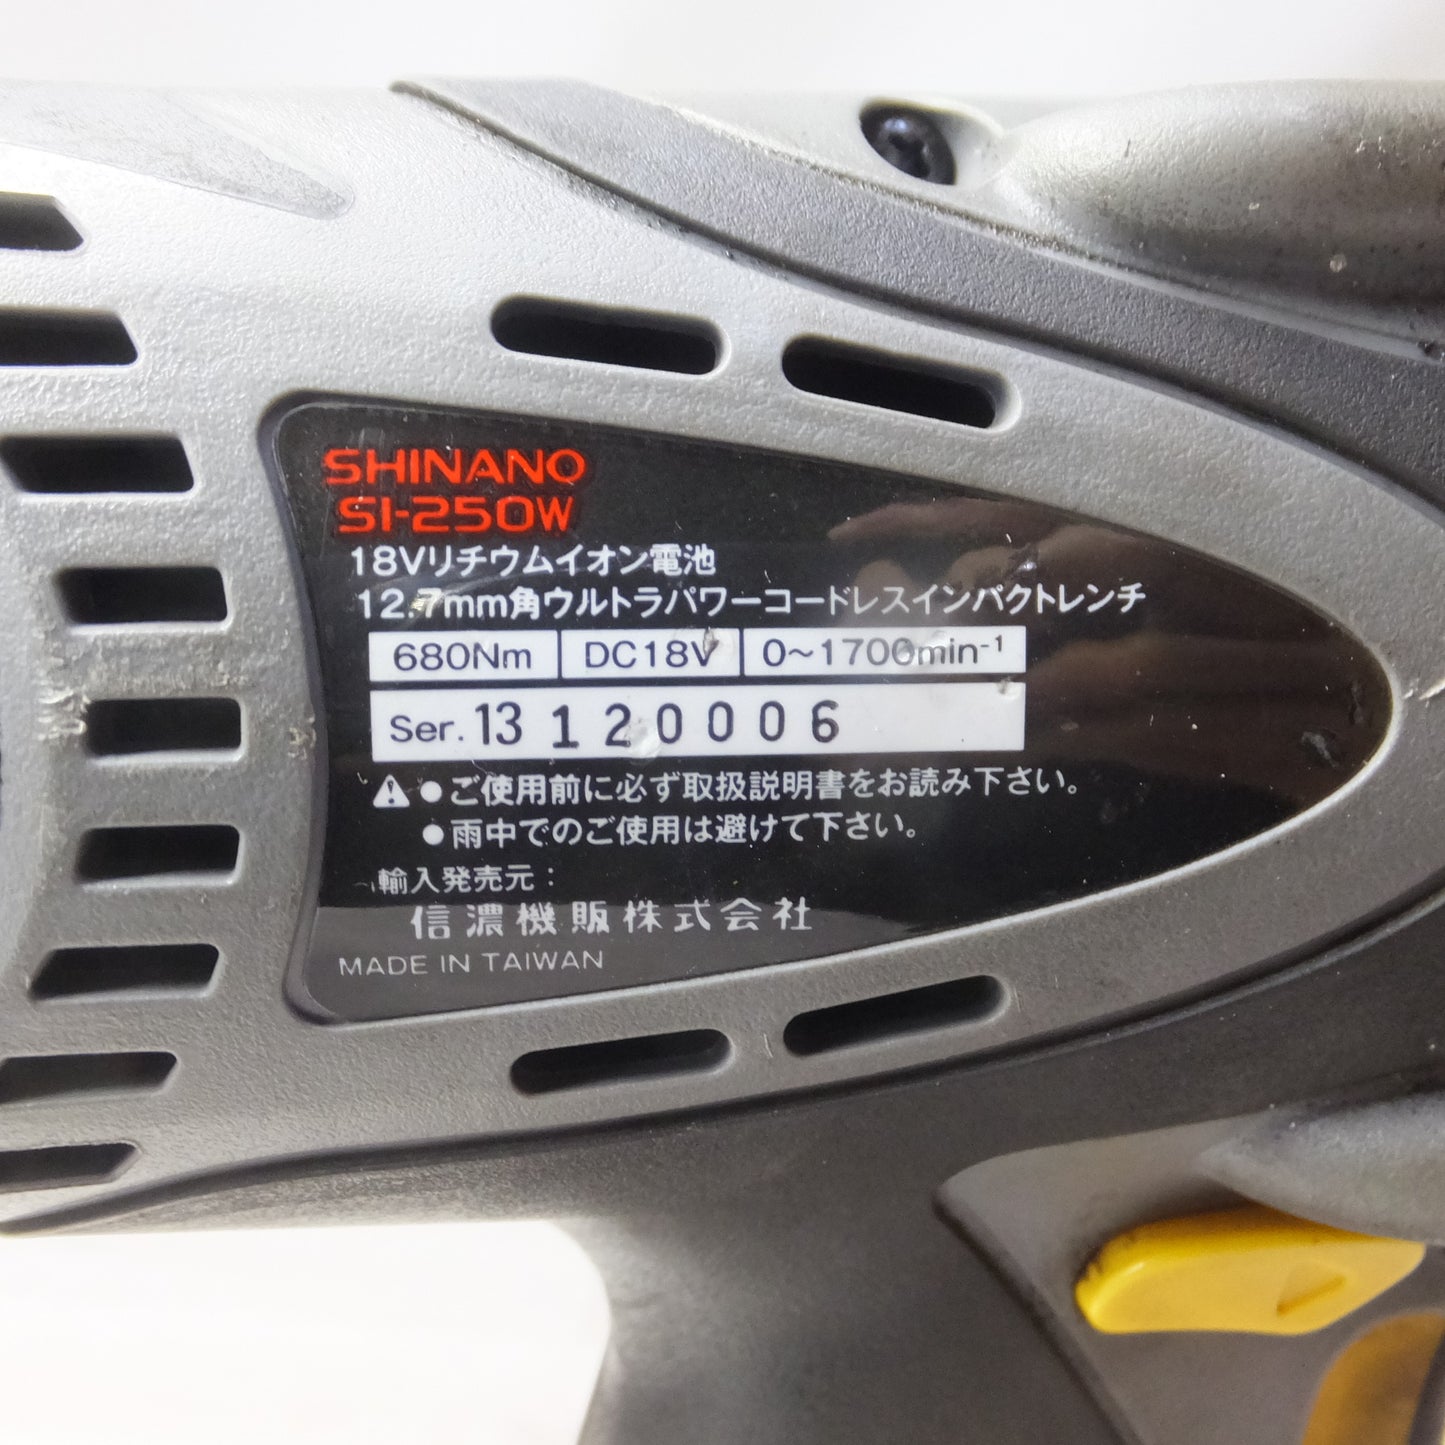 [送料無料] ◆SHINANO 信濃 12.7mm角 ウルトラパワーコードレスインパクトレンチ SI-250W 18V バッテリー2個 充電器付き 電動工具◆